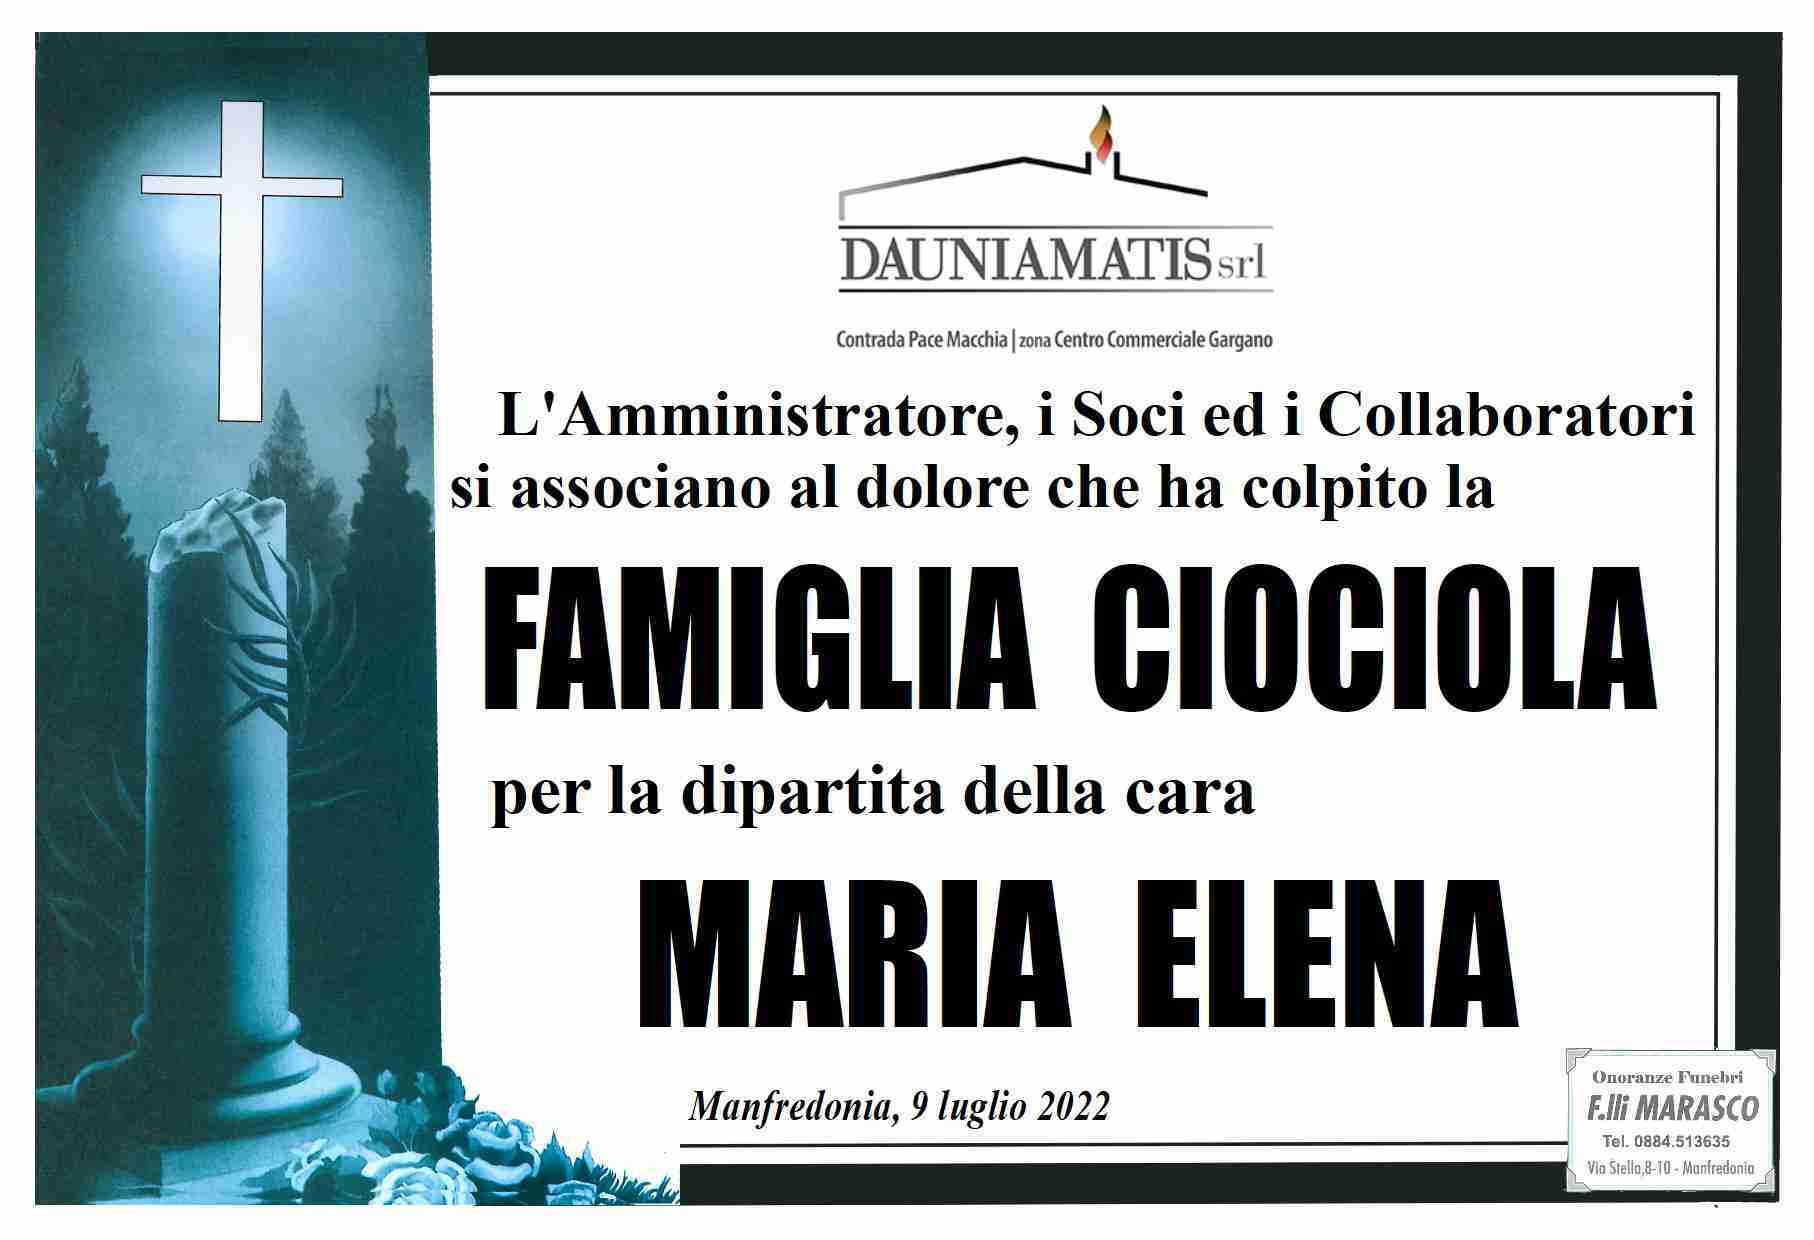 Maria Elena Ciociola